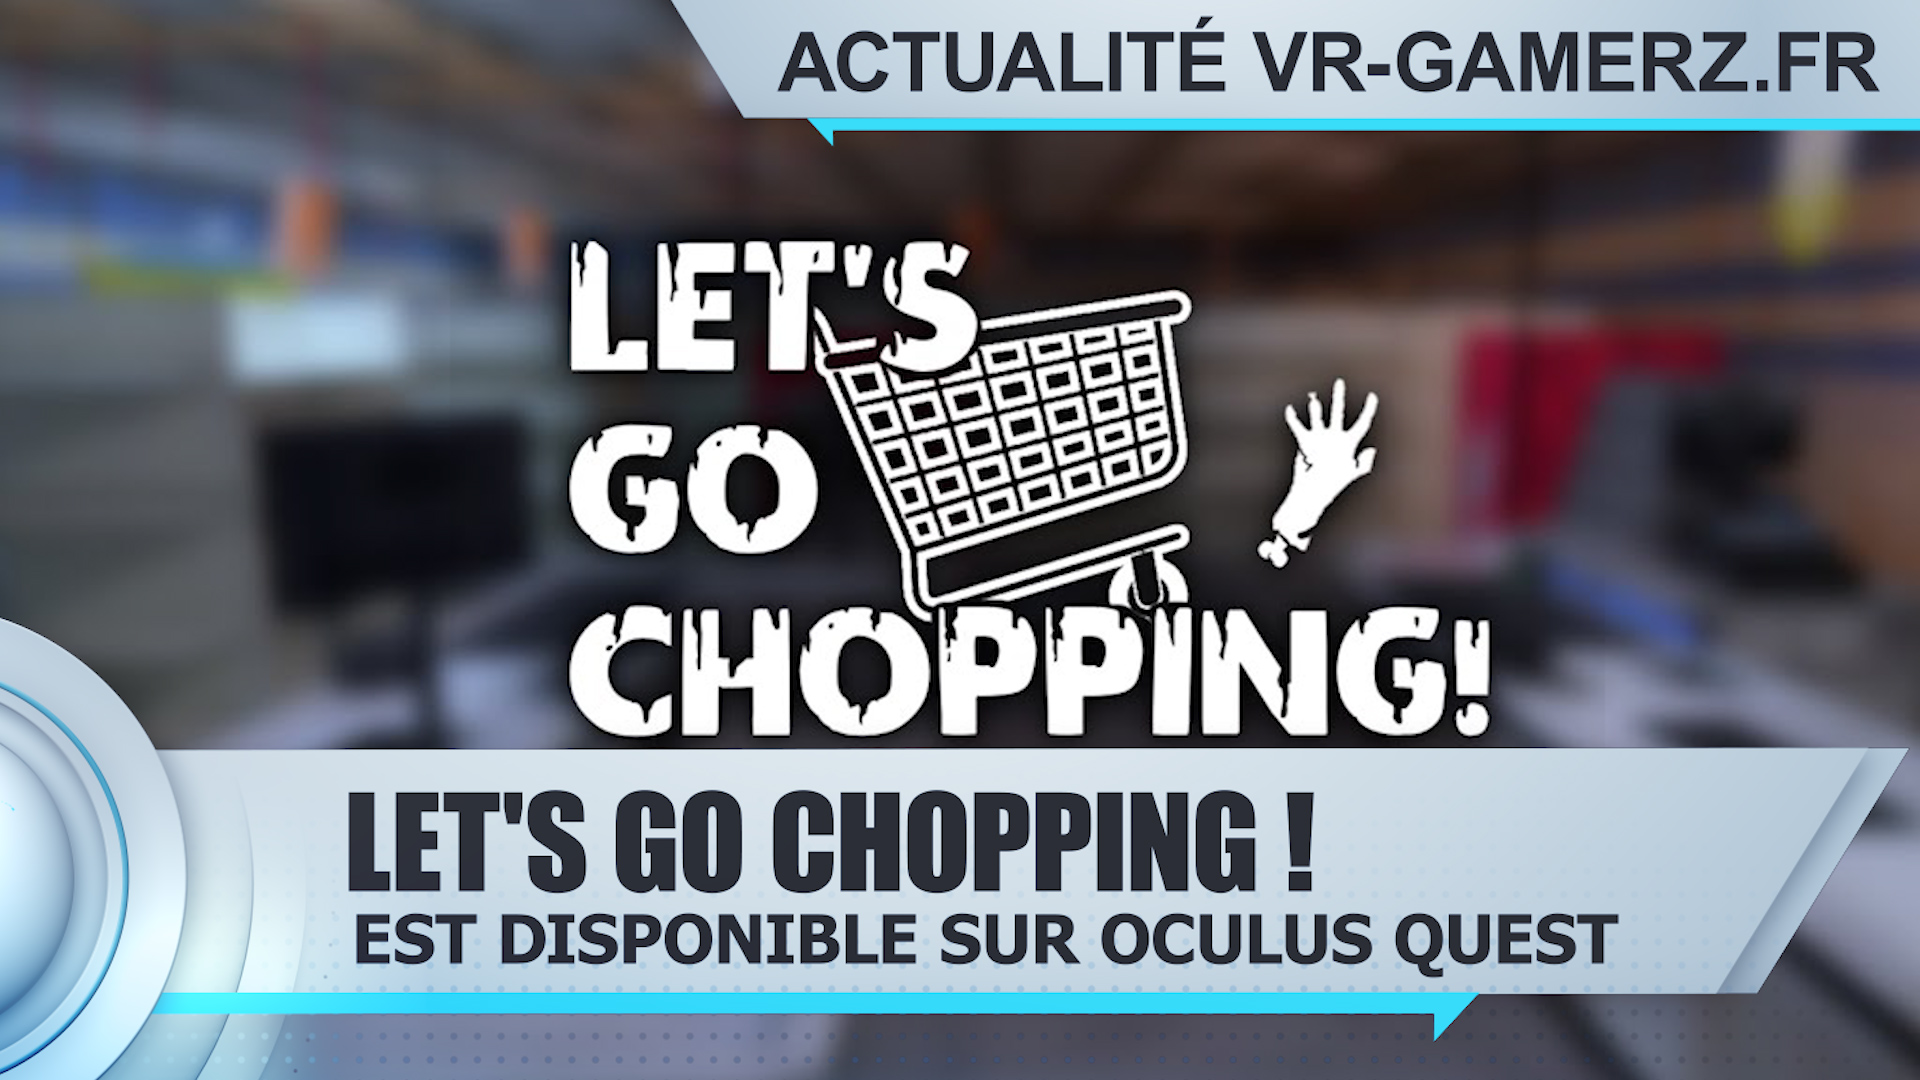 Let’s go chopping est disponible sur Oculus quest !